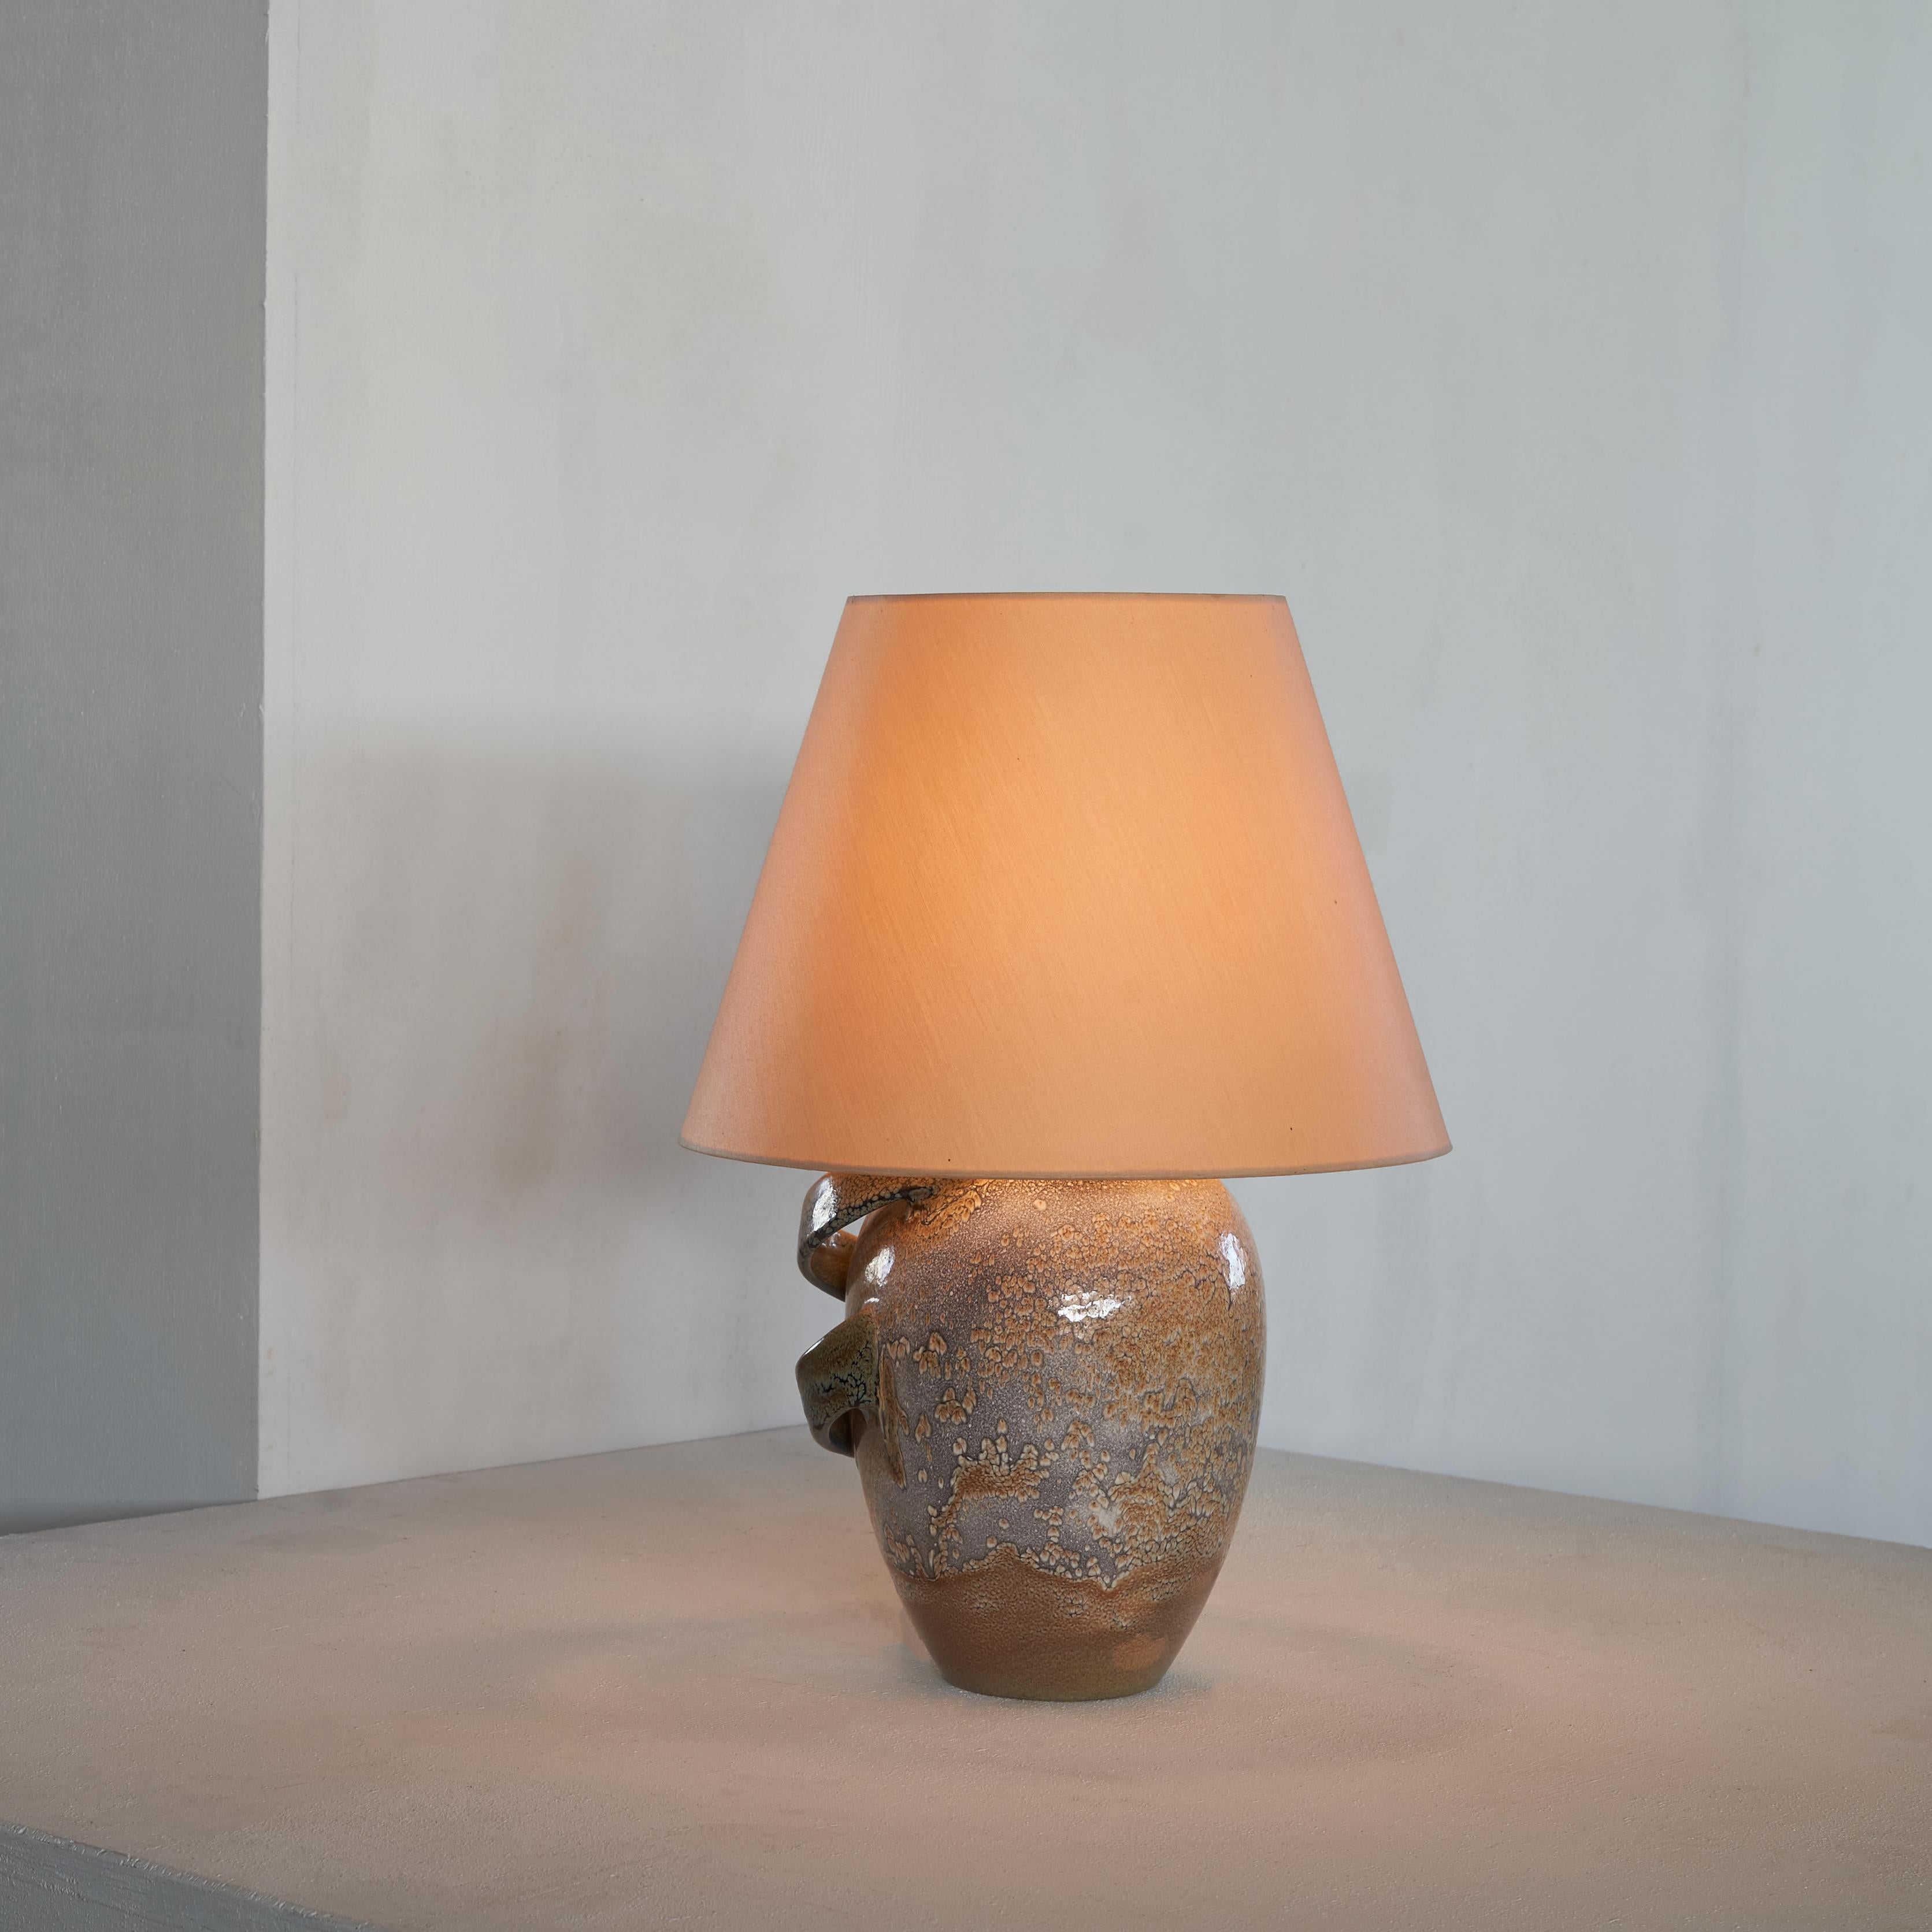 Lampe de table en céramique sculpturale, Pays-Bas, première moitié du XXe siècle.

Il s'agit d'une lampe spéciale en céramique. Tant la forme que l'exécution sont expressives et intéressantes. La lampe a une forme classique et une belle glaçure et